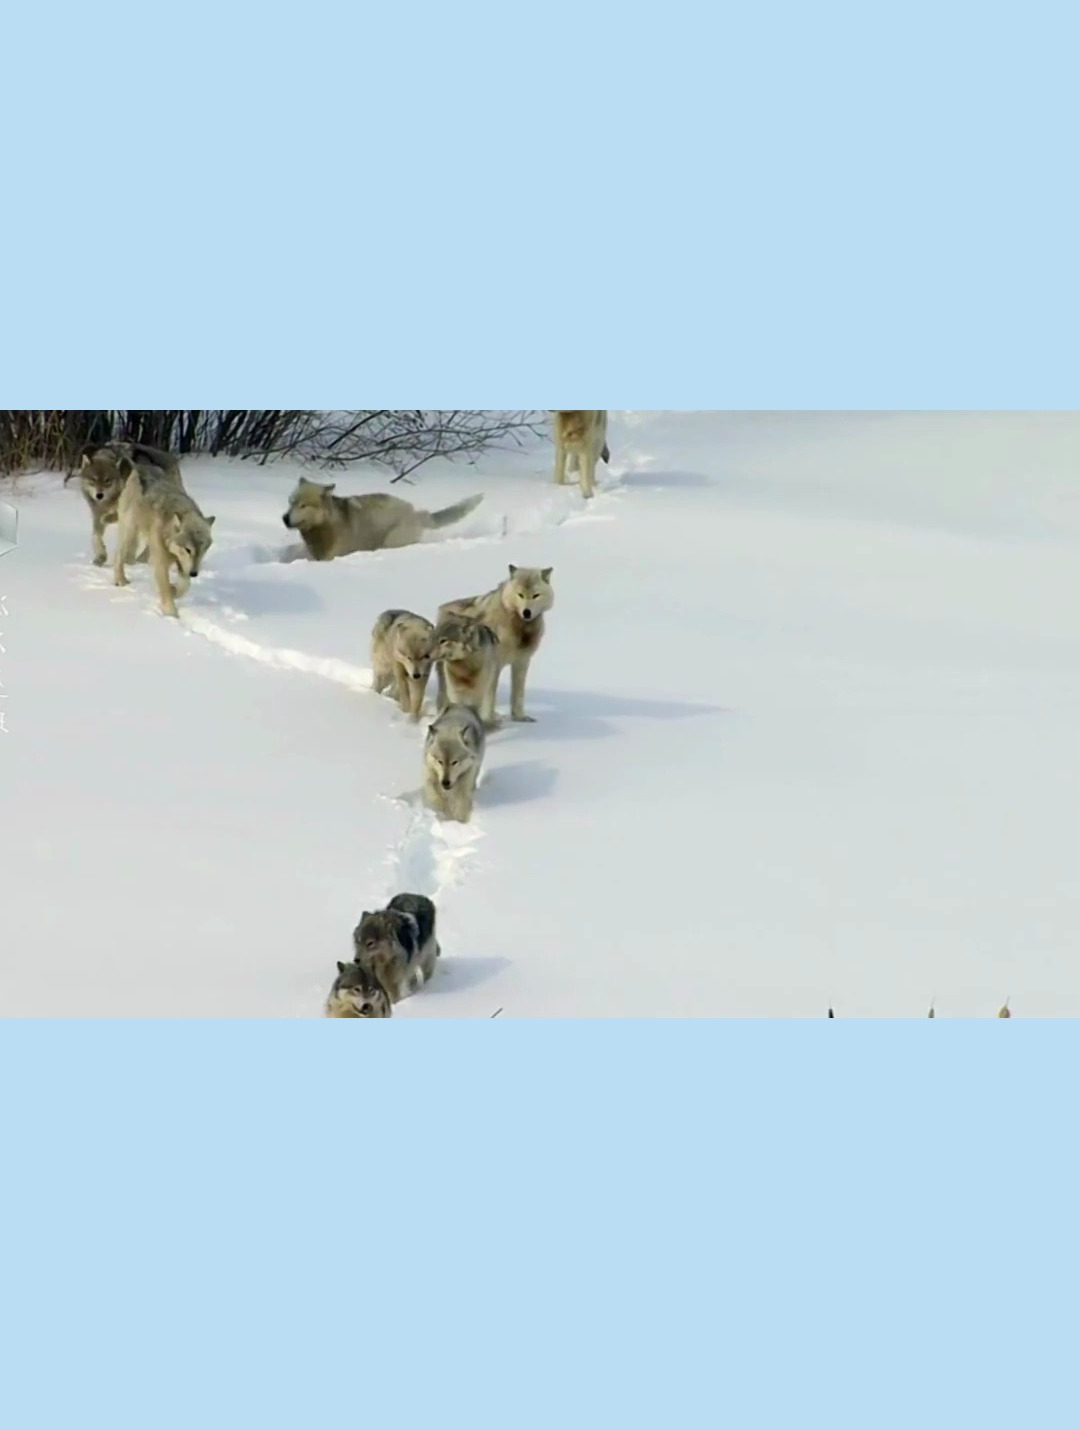 北美灰狼群捕食野牛 面对这么大的猎物能成功真的是勇气